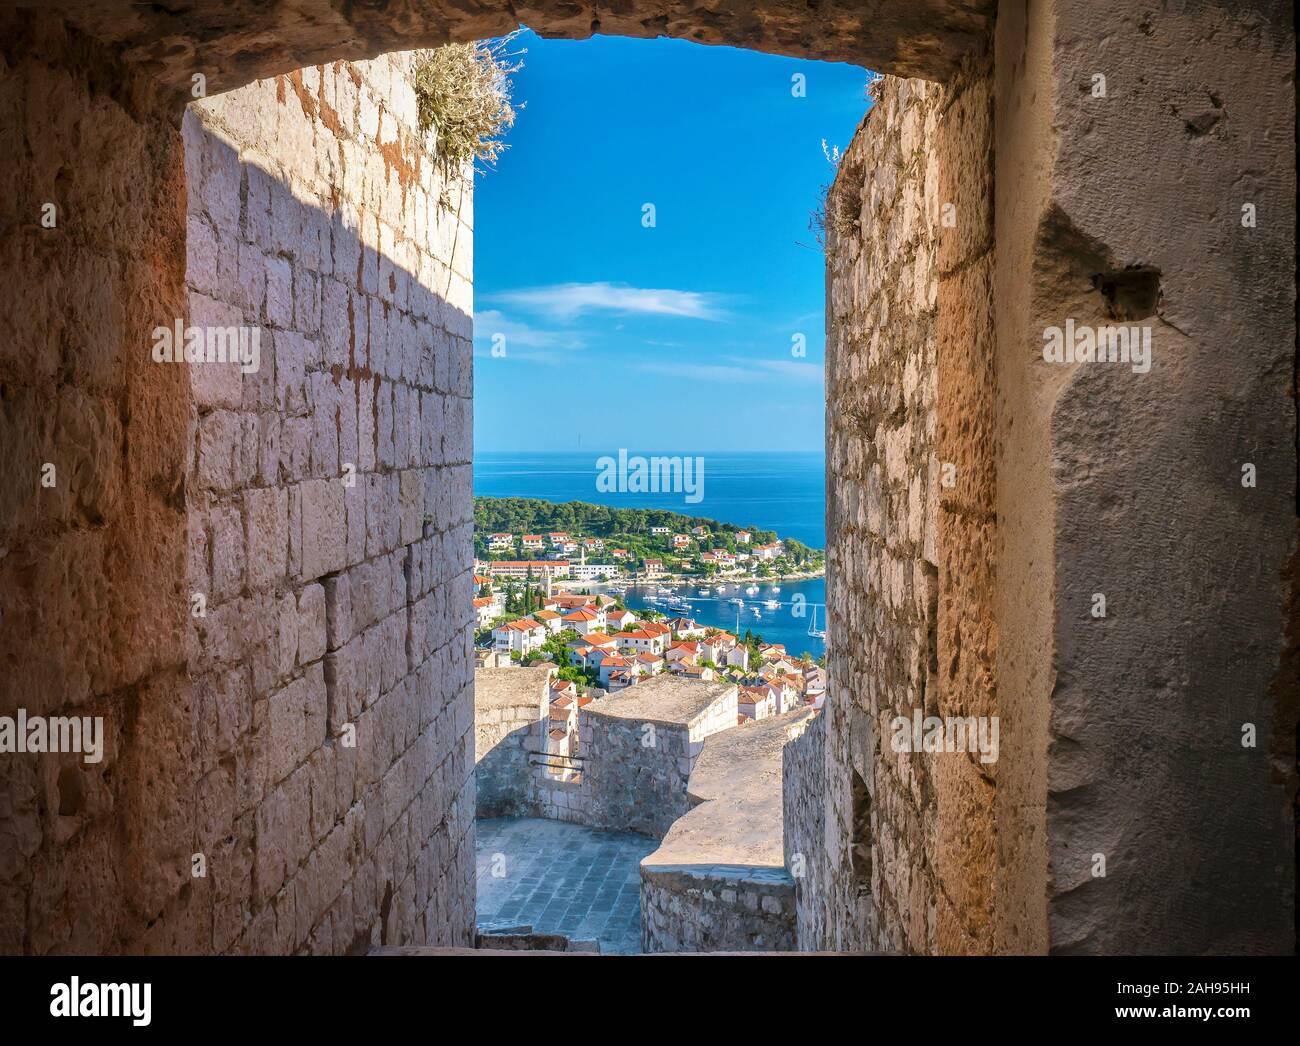 Une vue magnifique du port de Hvar vu par un étroit passage d'entrée dans la forteresse de pierre médiévale situé au-dessus de la ville. Banque D'Images